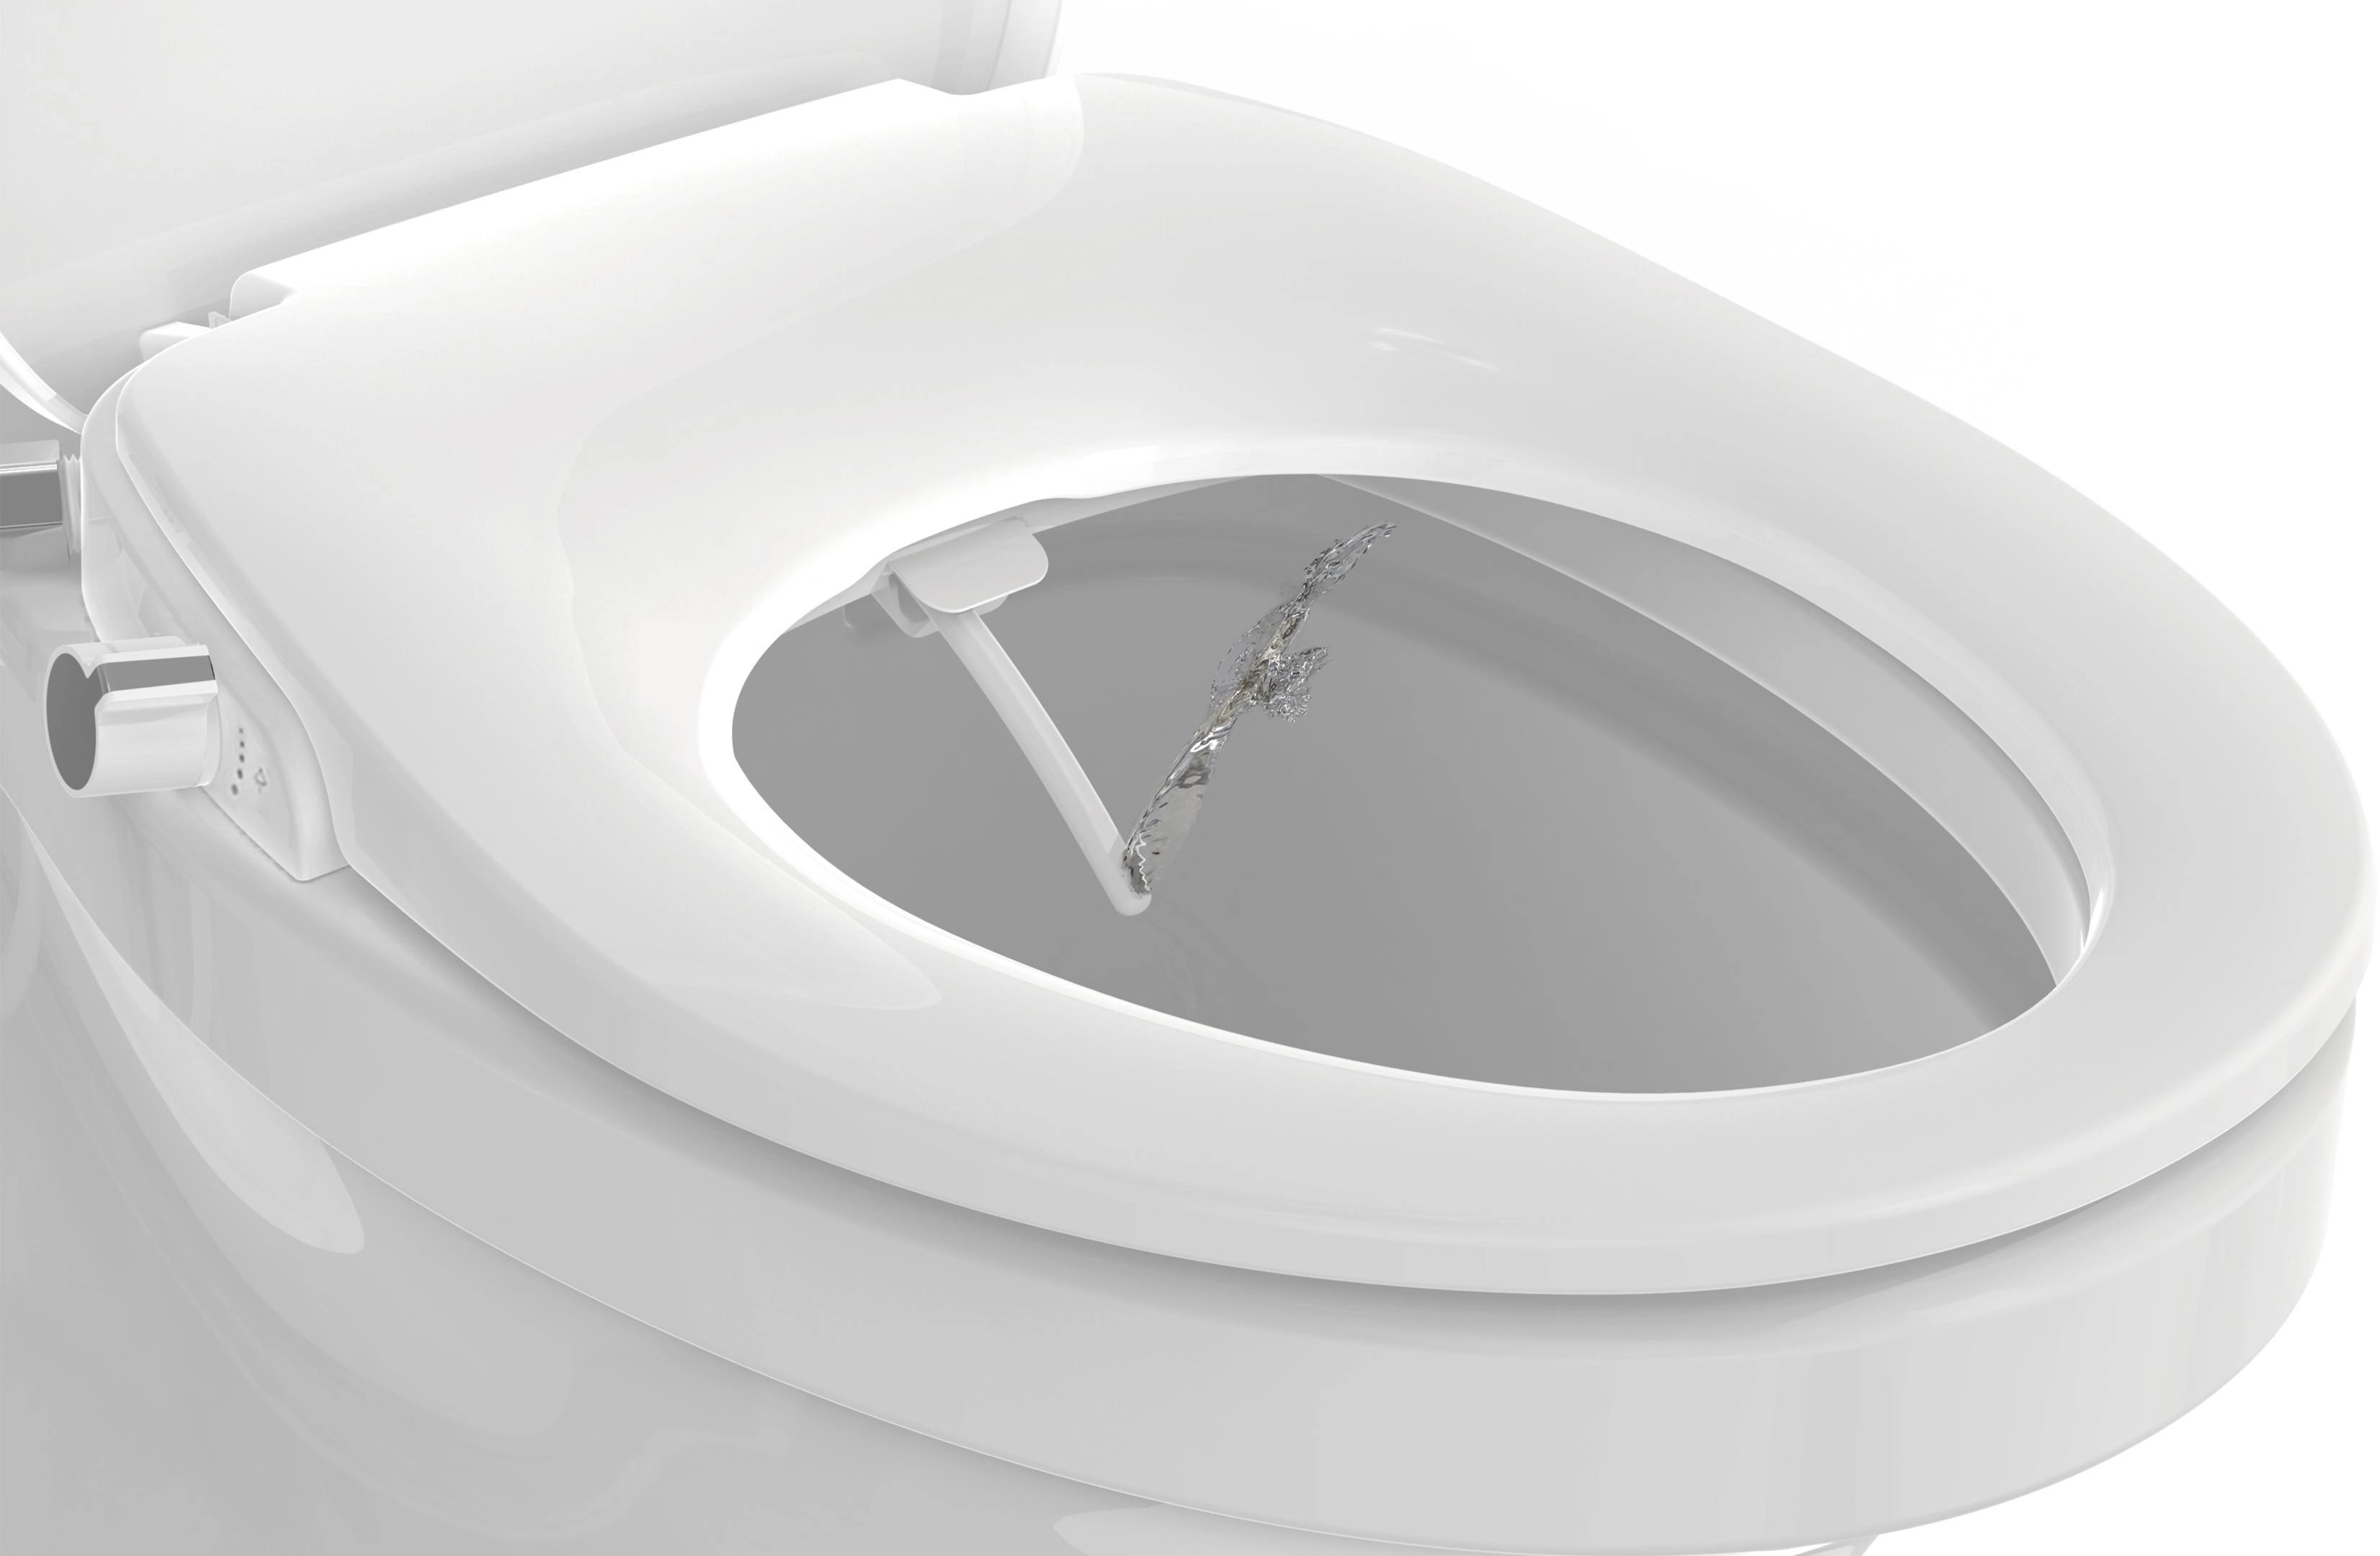 Eisl Dusch WC-Sitz und OBI Aufsatz bei kaufen Schnellverschluss Absenkautomatik mit